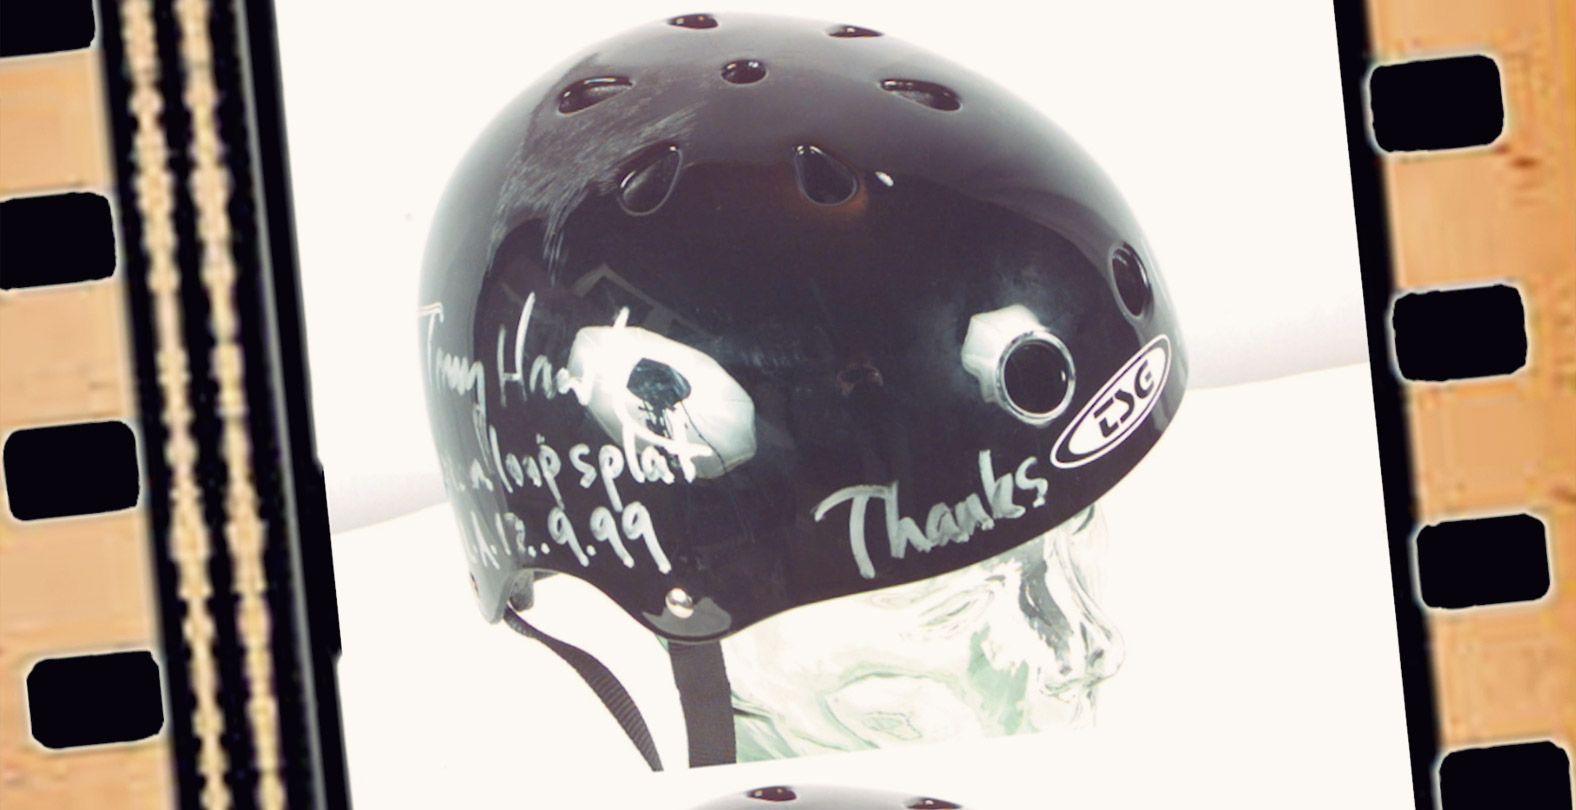 TSG Helmet signed by Tony Hawk